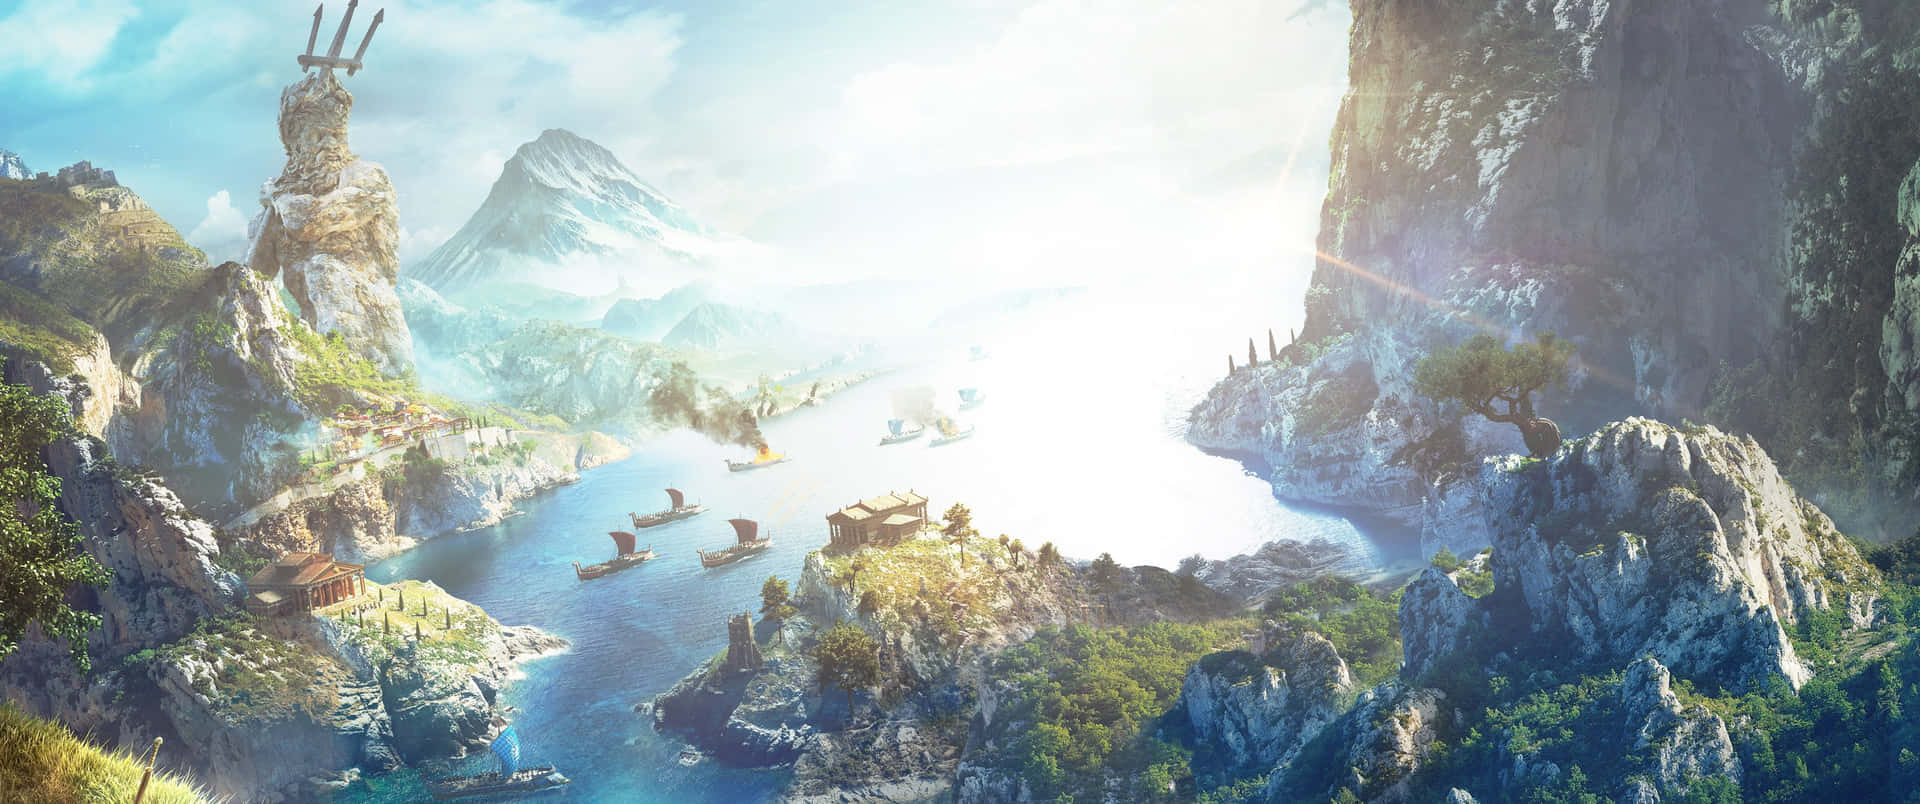 Meereslandschaftassassin's Creed Odyssey Ultra Wide Gaming Wallpaper